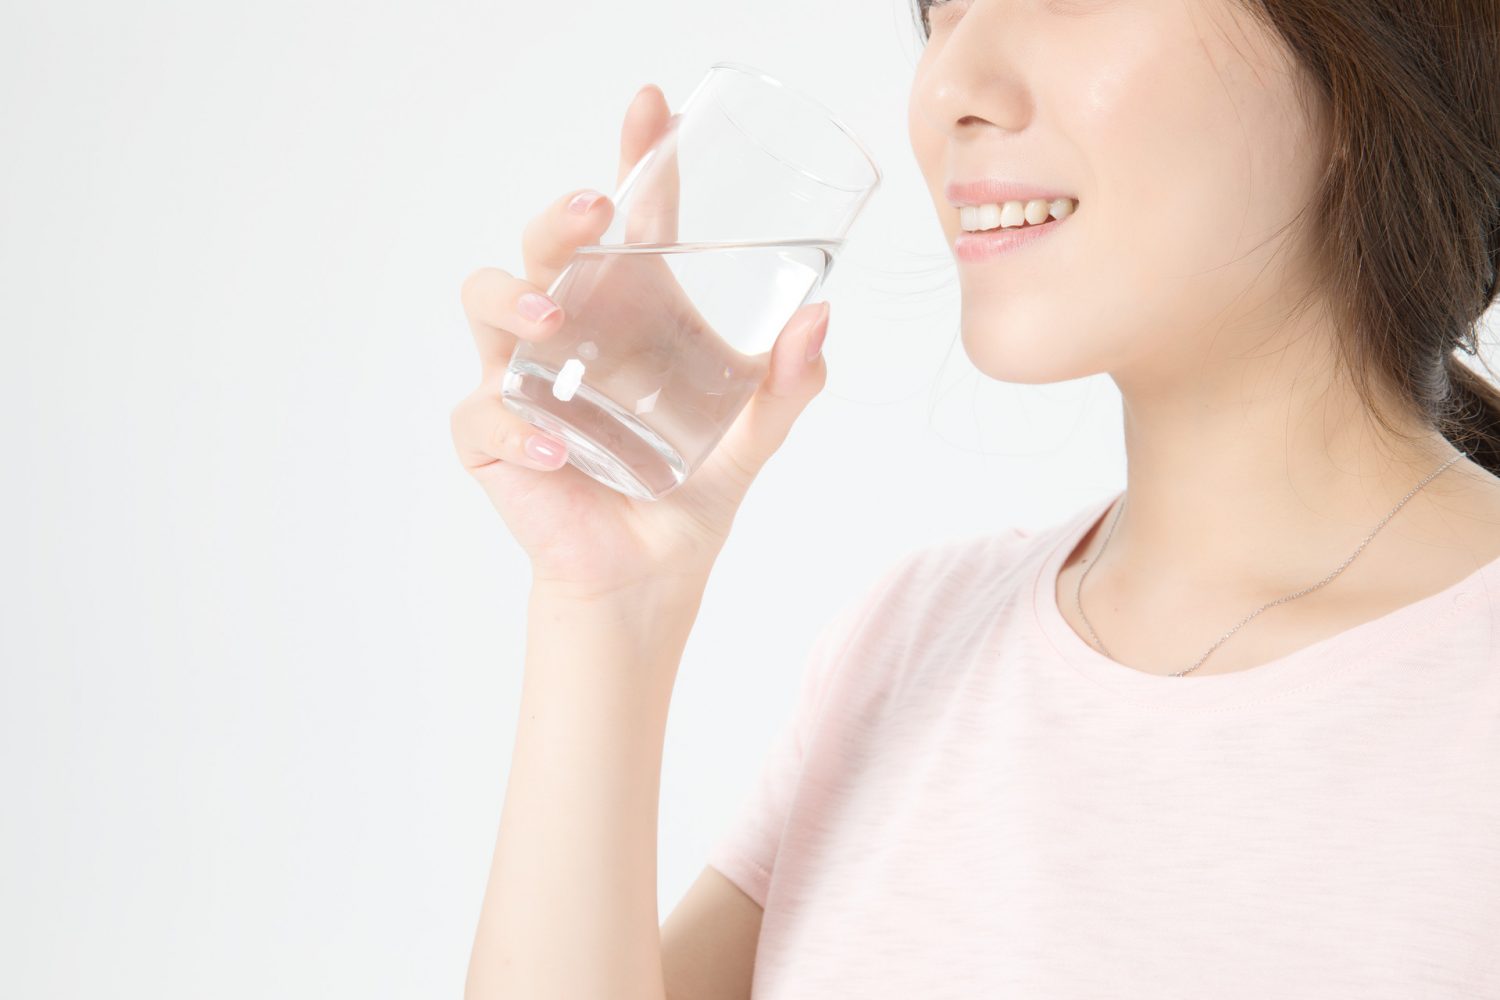 多喝水和增加膳食纤维的摄入是预防和解决便秘的首要步骤。